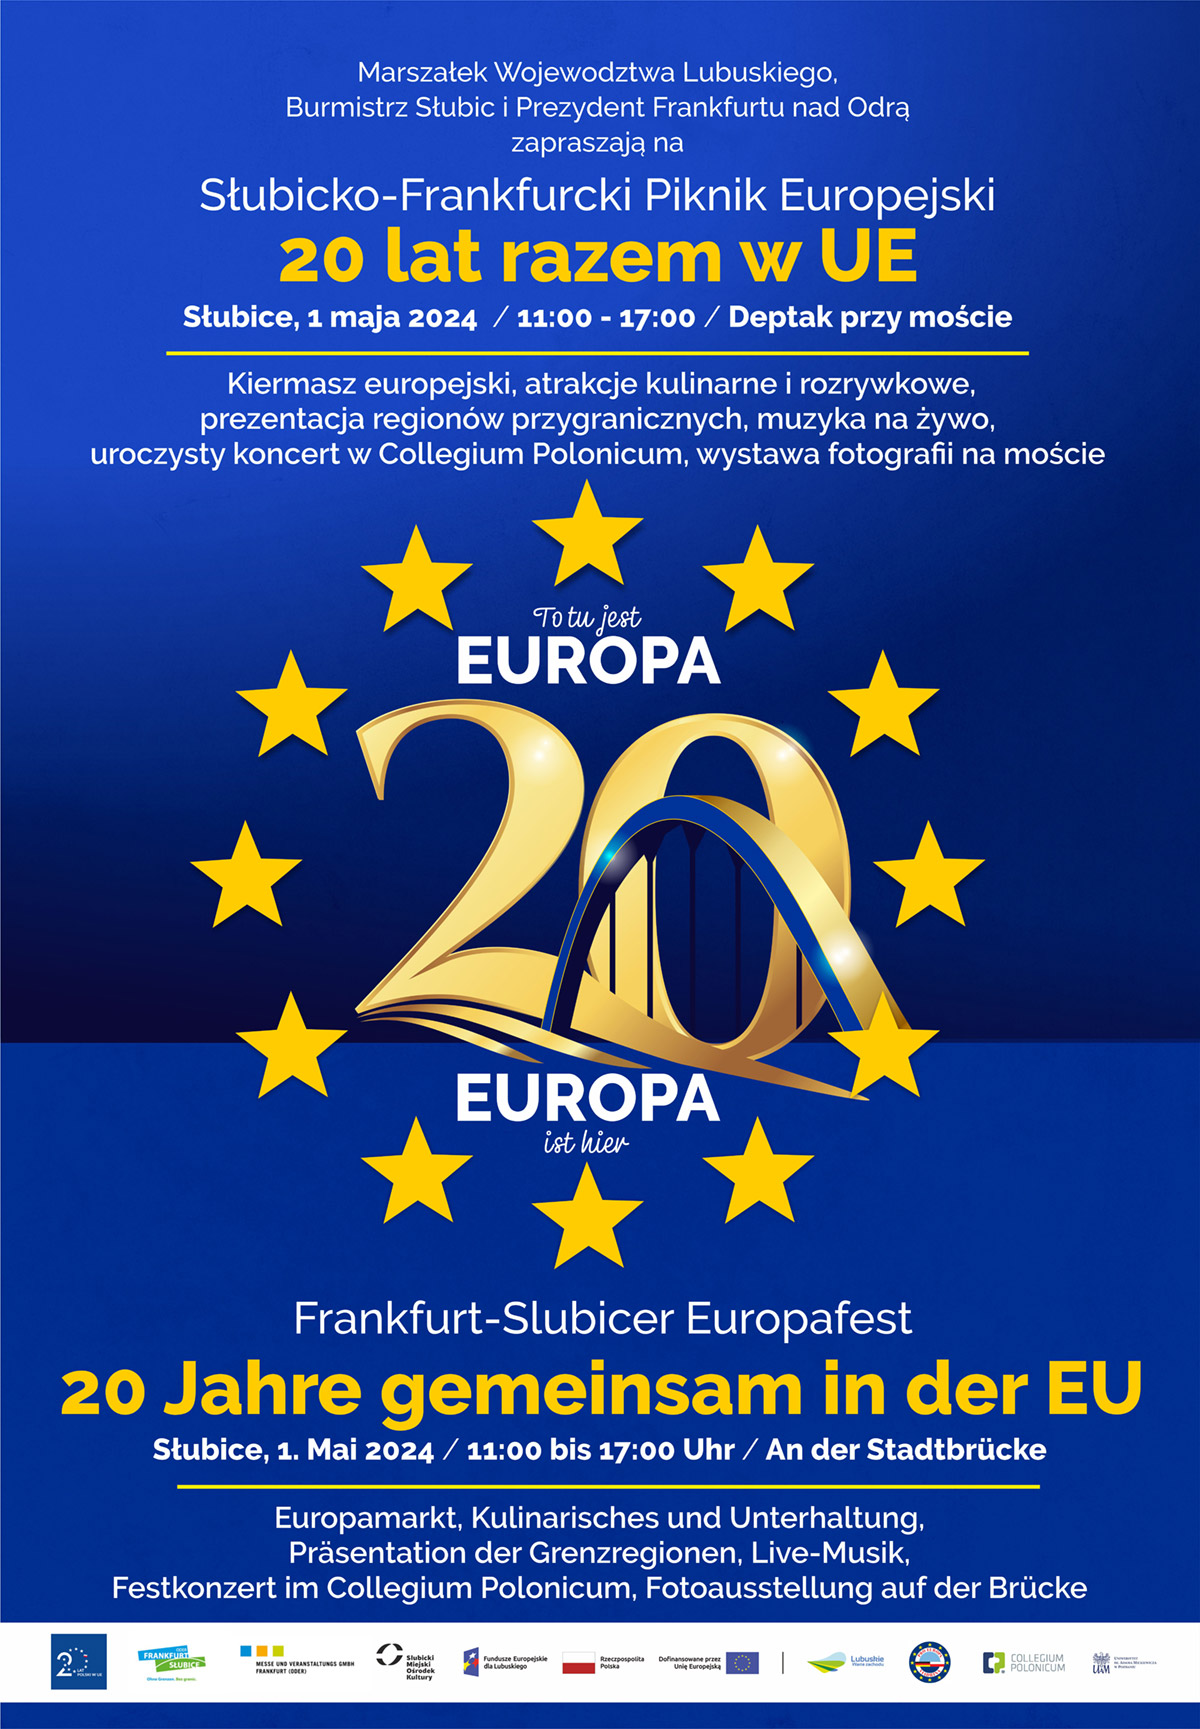 20-lecie wstąpienia Polski do Unii Europejskiej